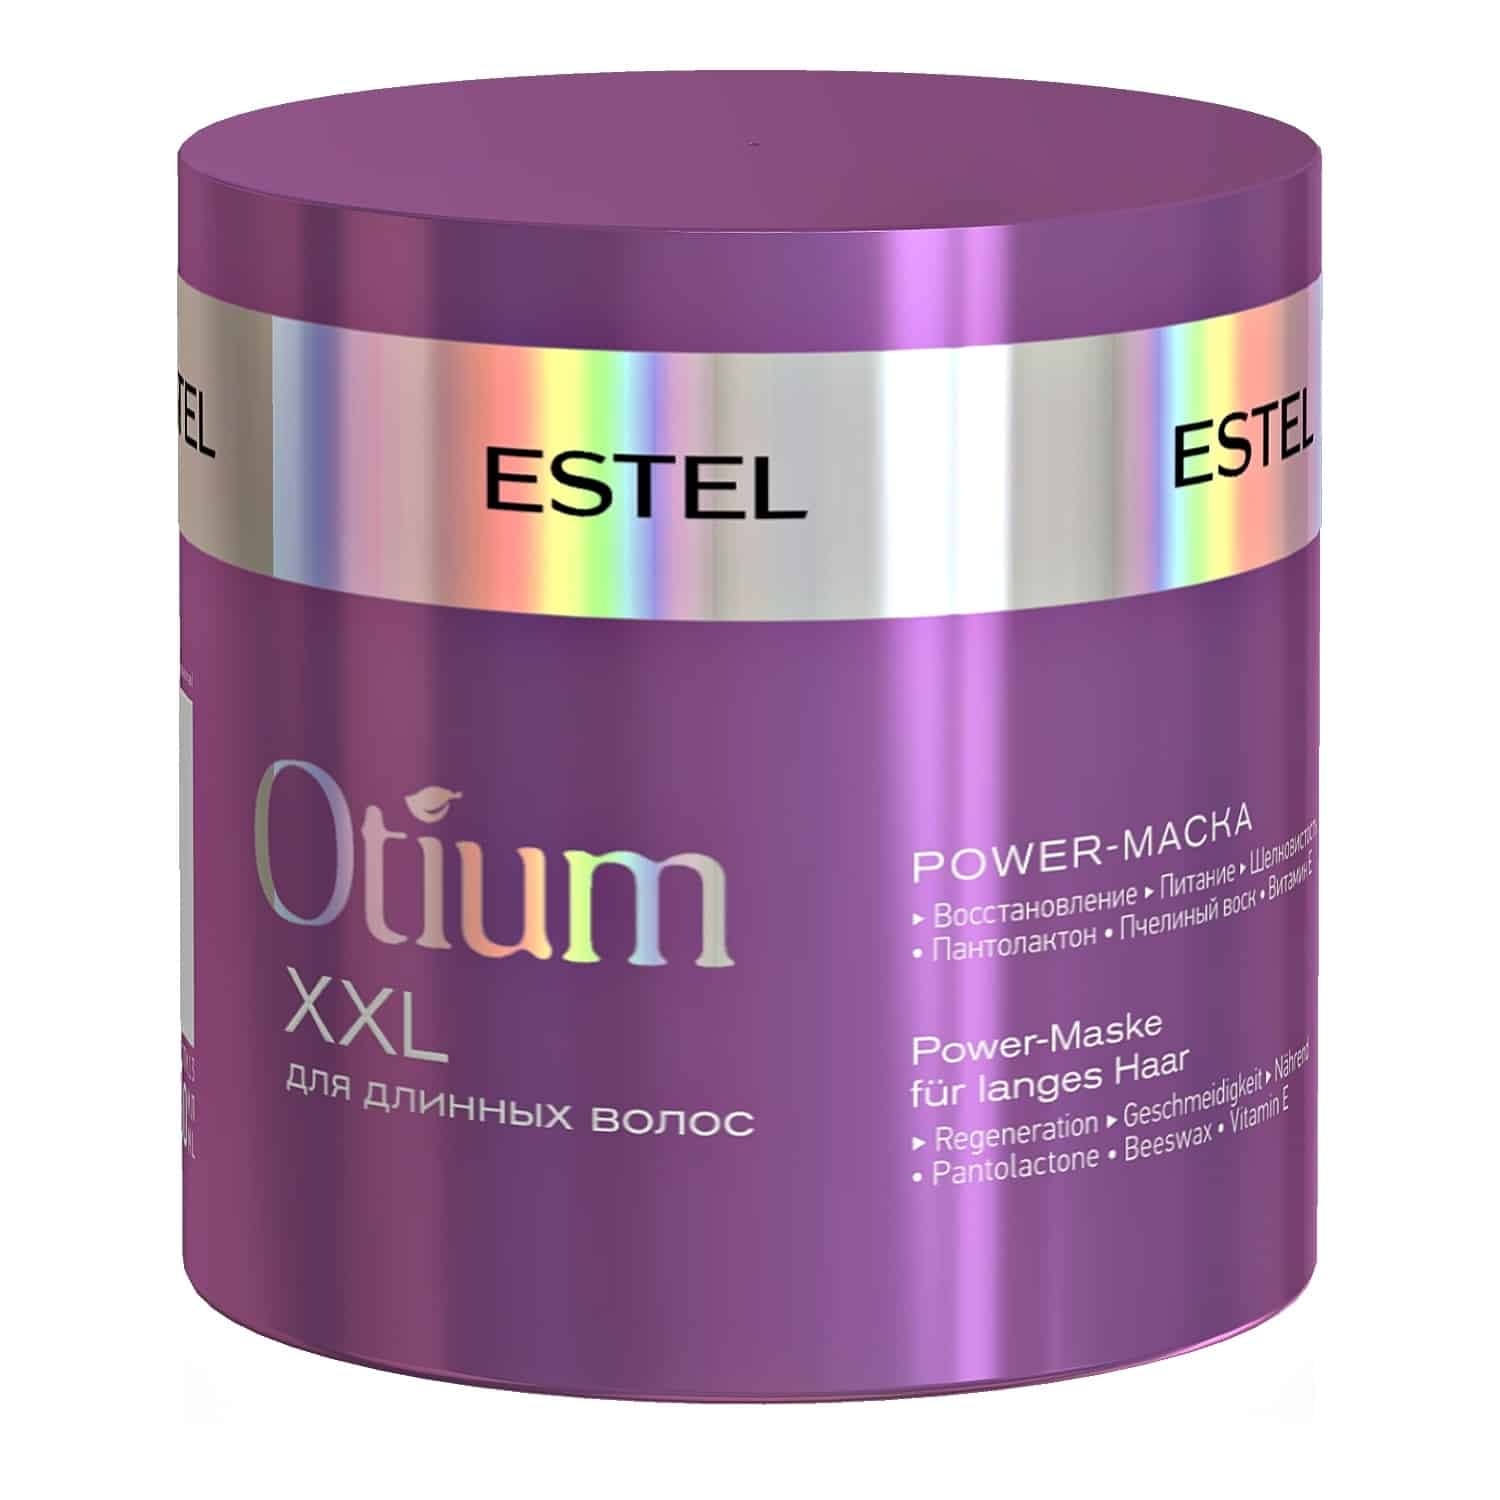 ESTEL'den uzun saçlar için Otium XXL güç maskesi